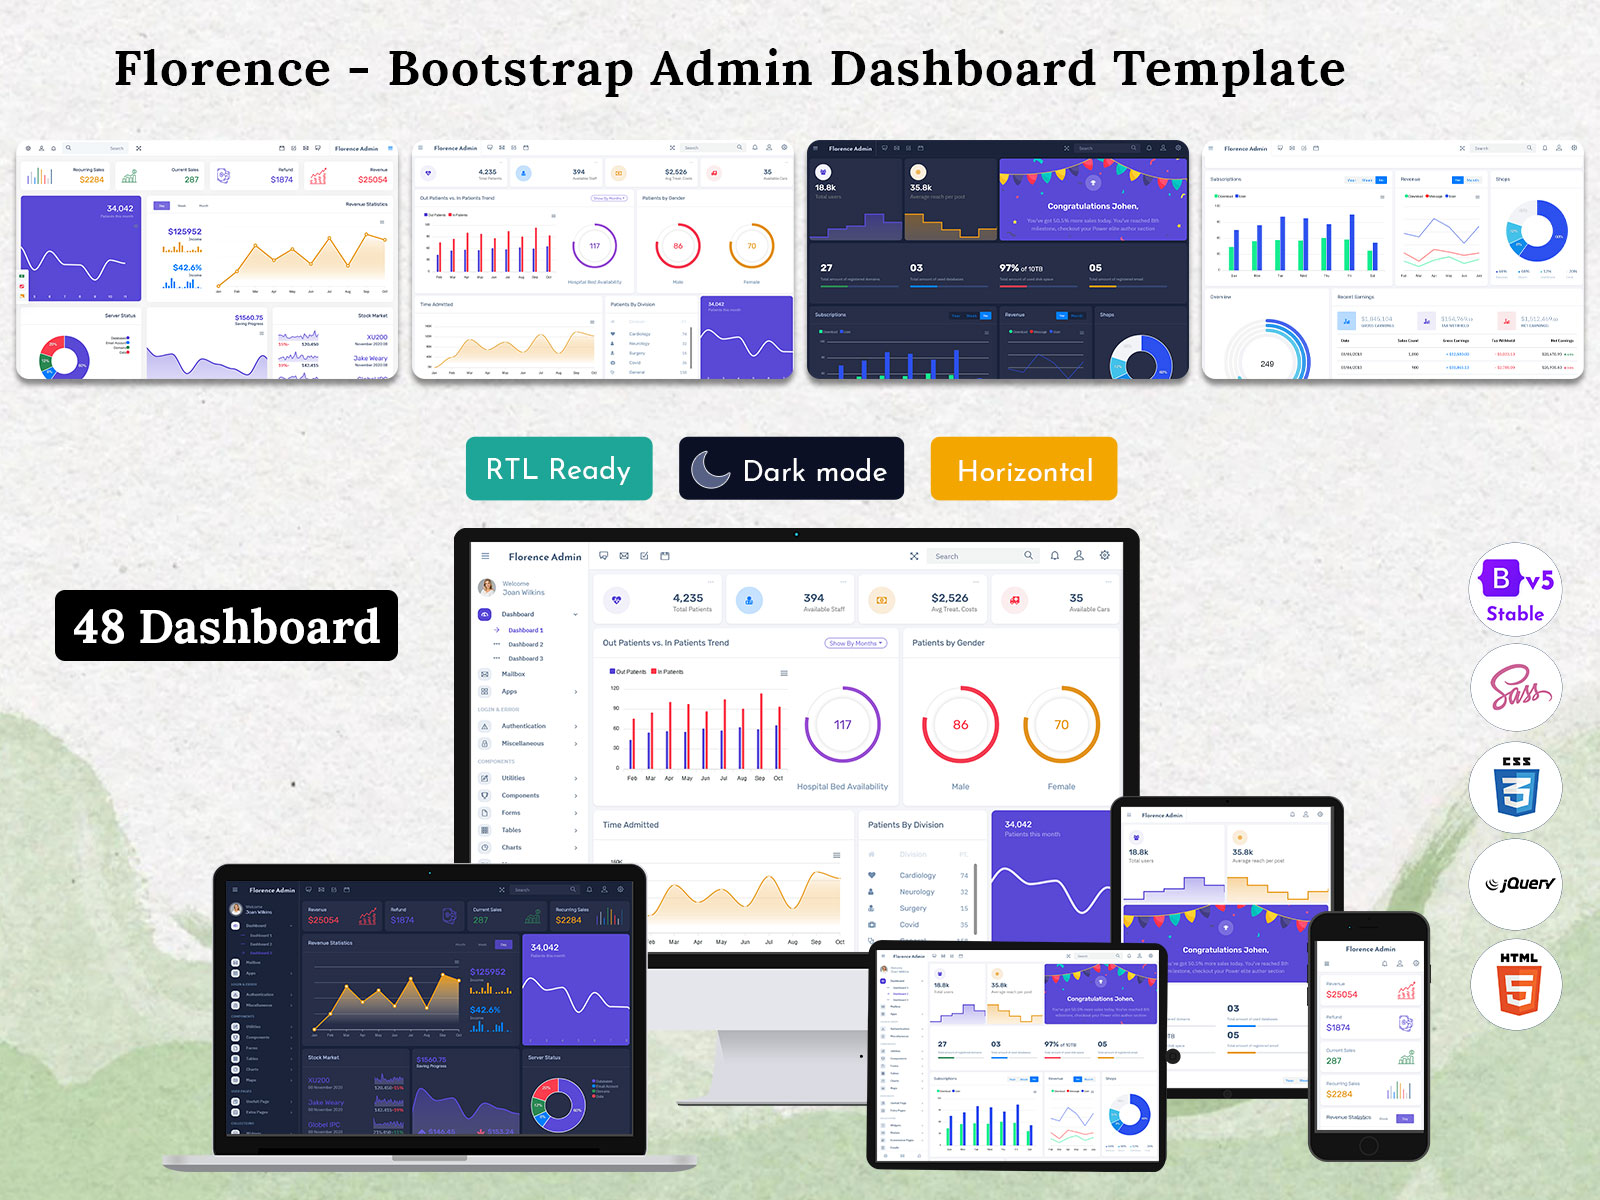 Bootstrap 5 Admin Dashboard